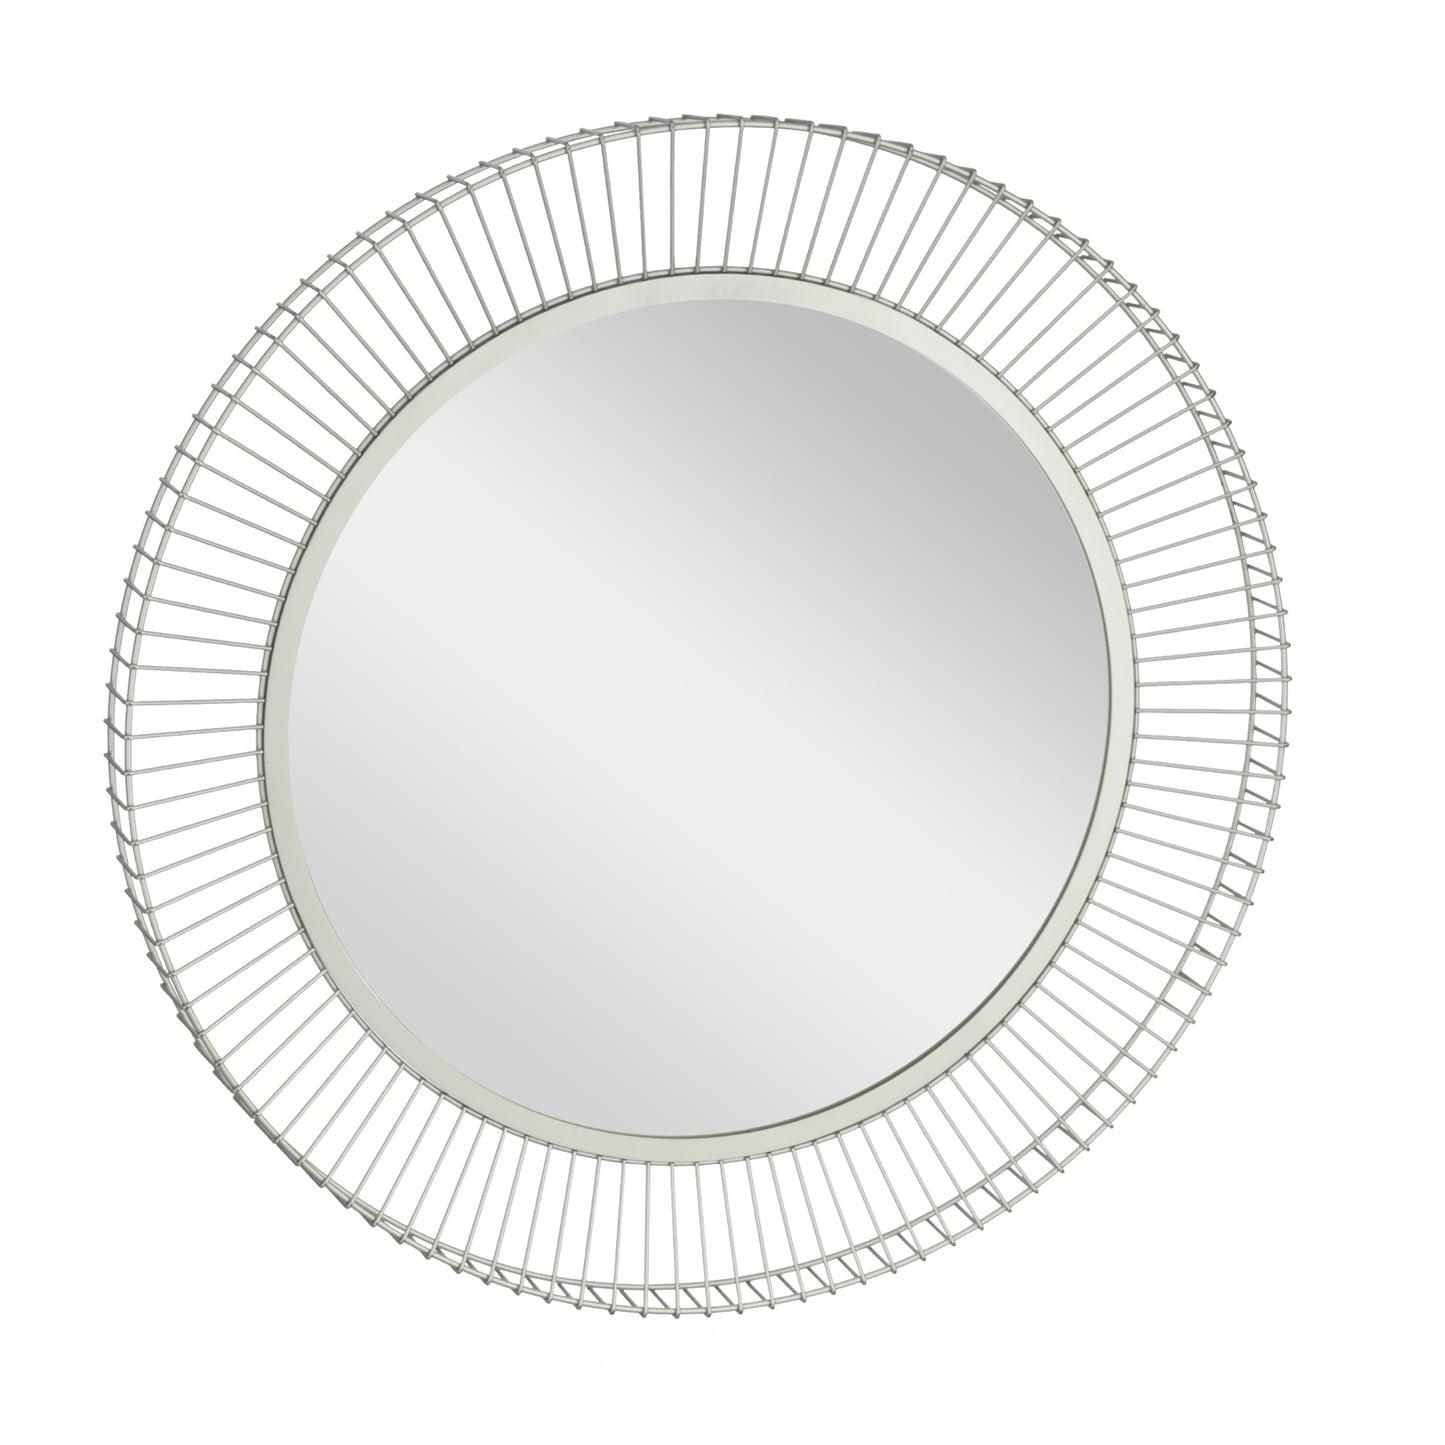 Masinloc Round Silver Mirror